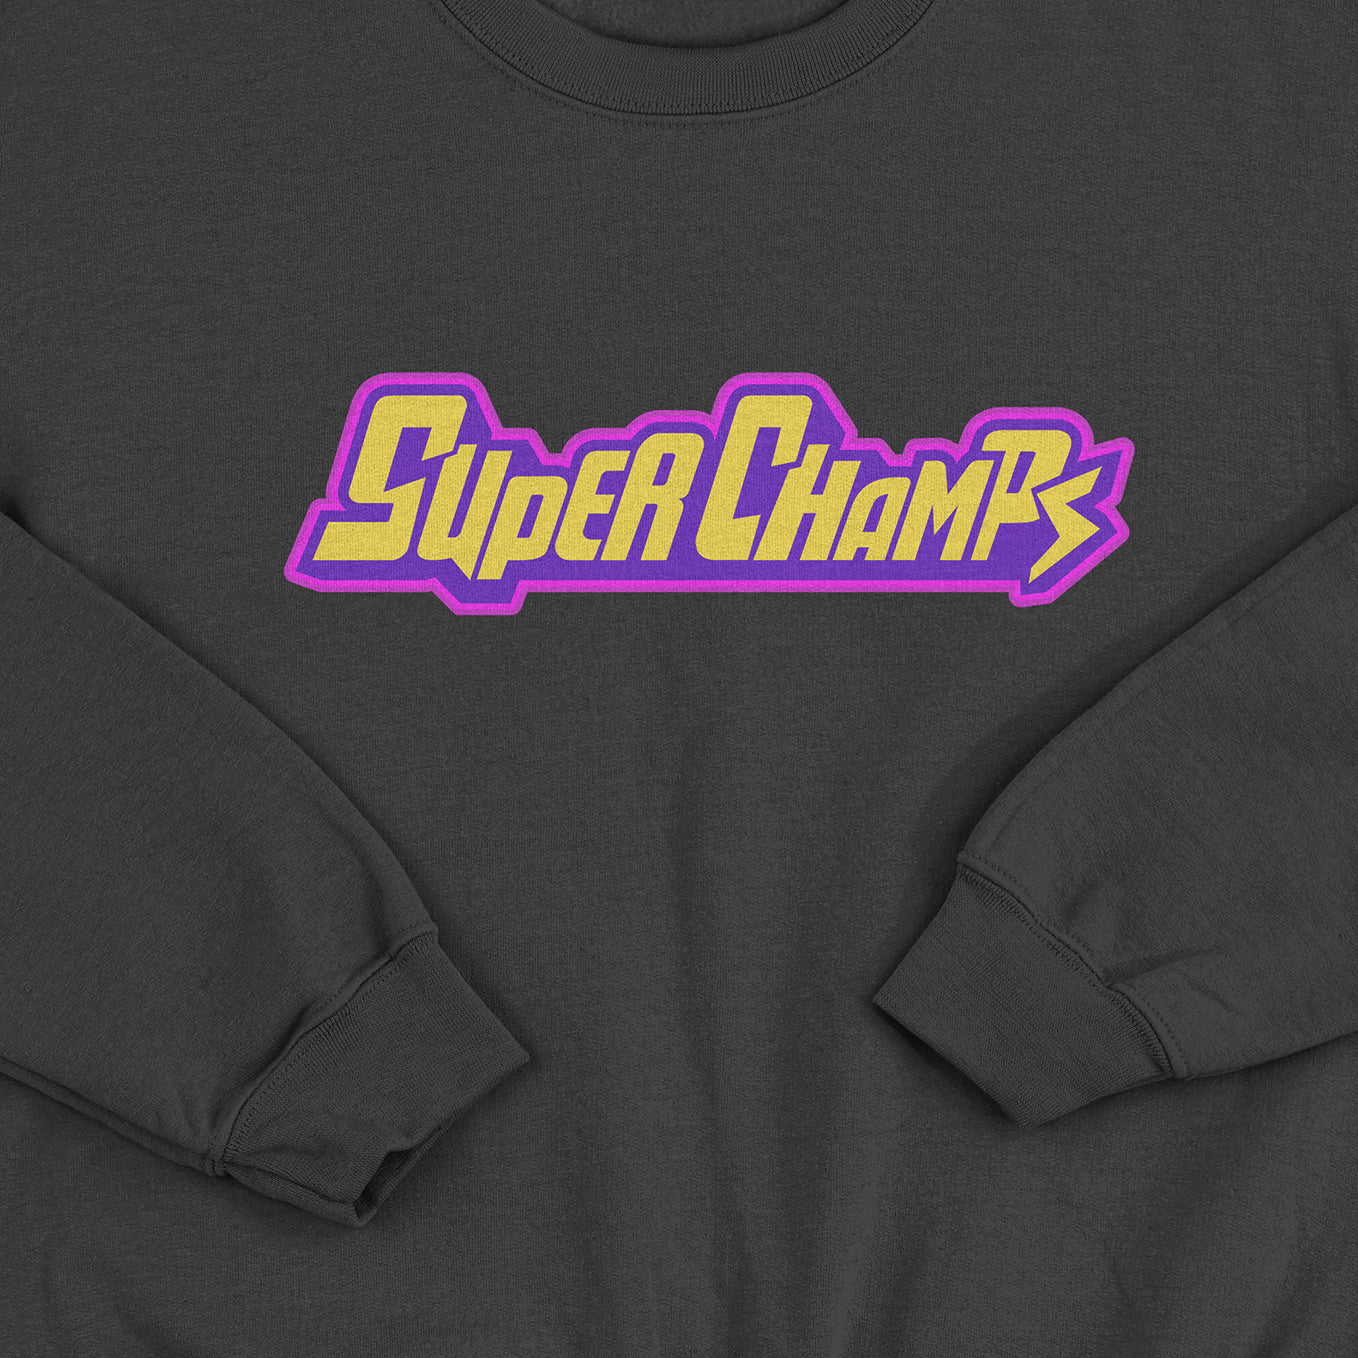 Super Champs Classic Sweatshirt